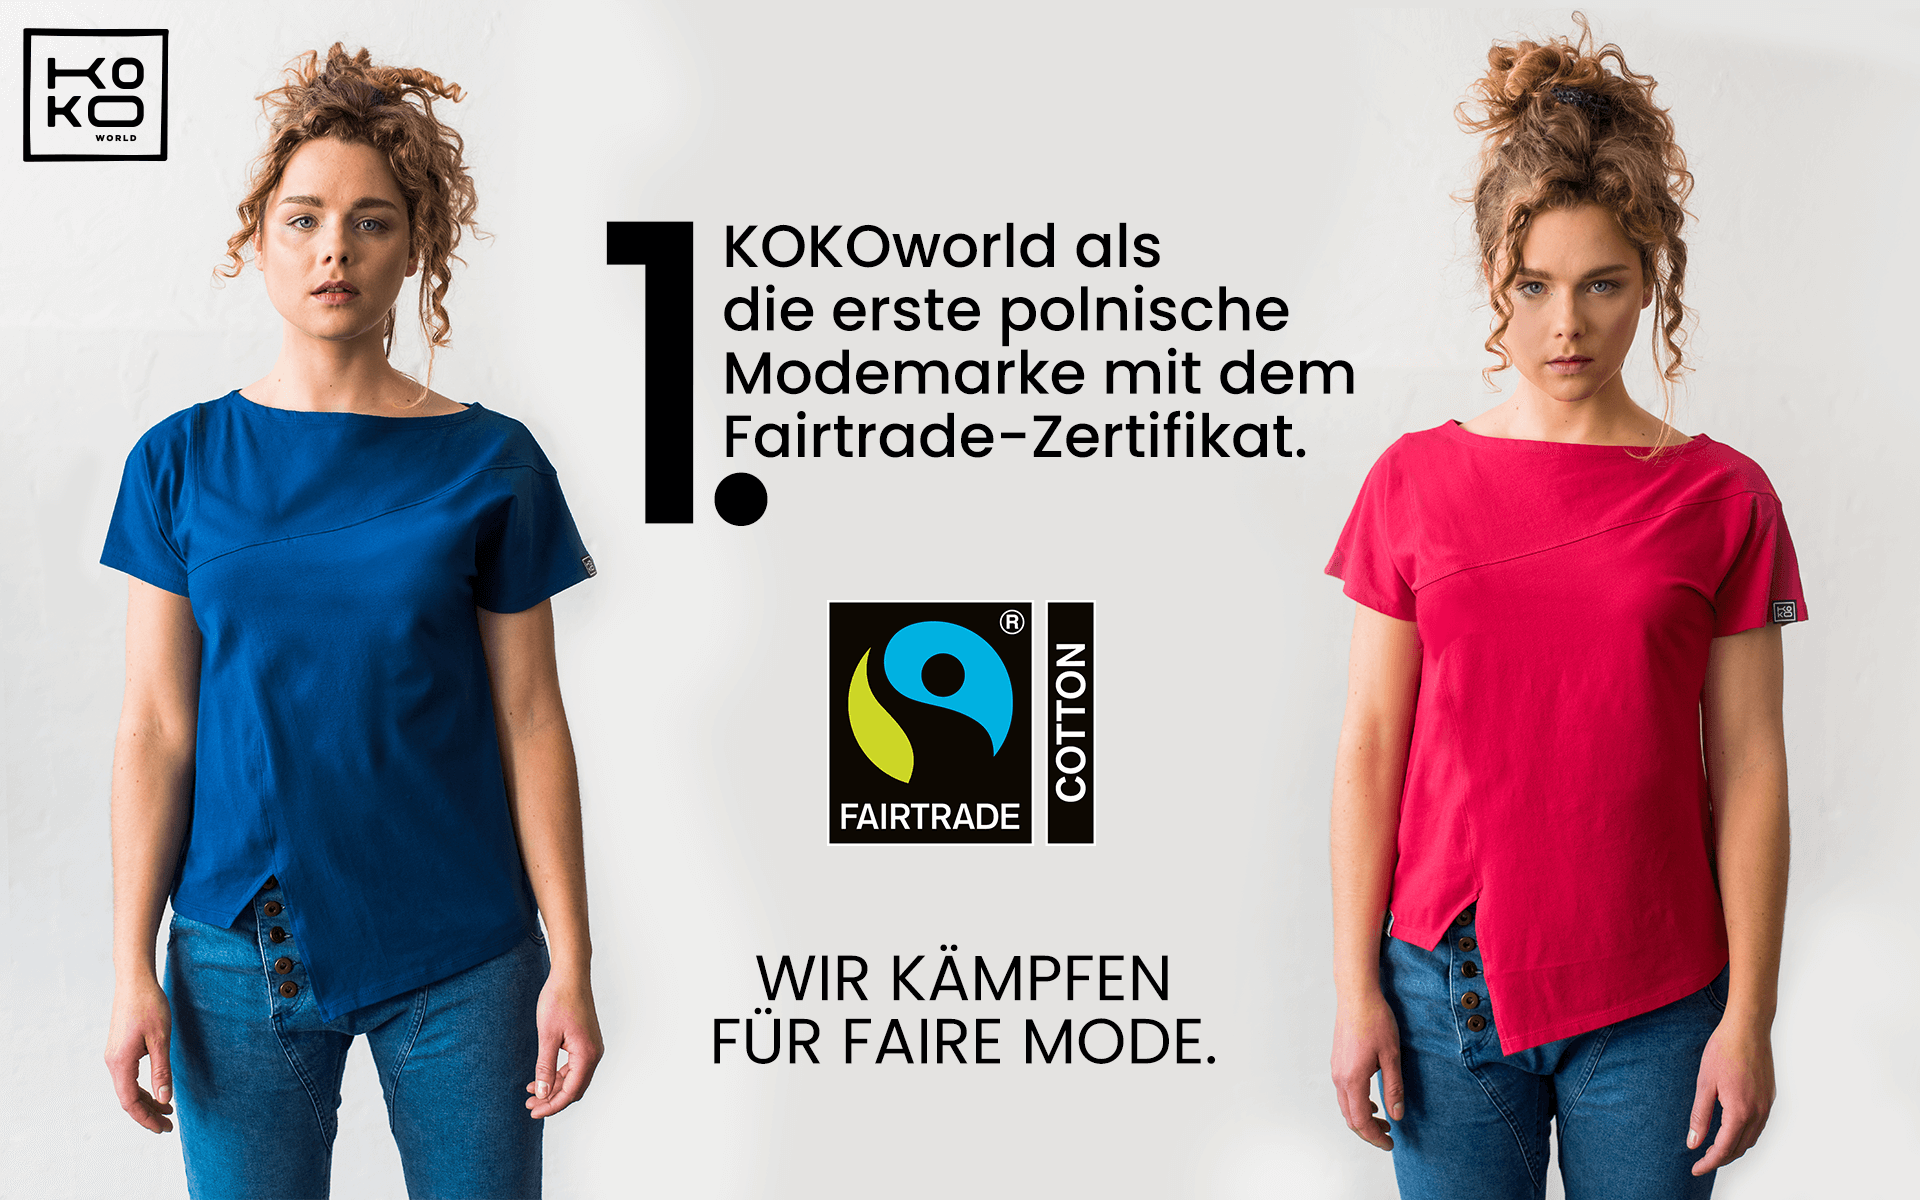 Wir kämpfen für Mode, die faire Mode sein wird - KOKOworld ist die erste polnische Modemarke mit dem Fairtrade-Zertifikat